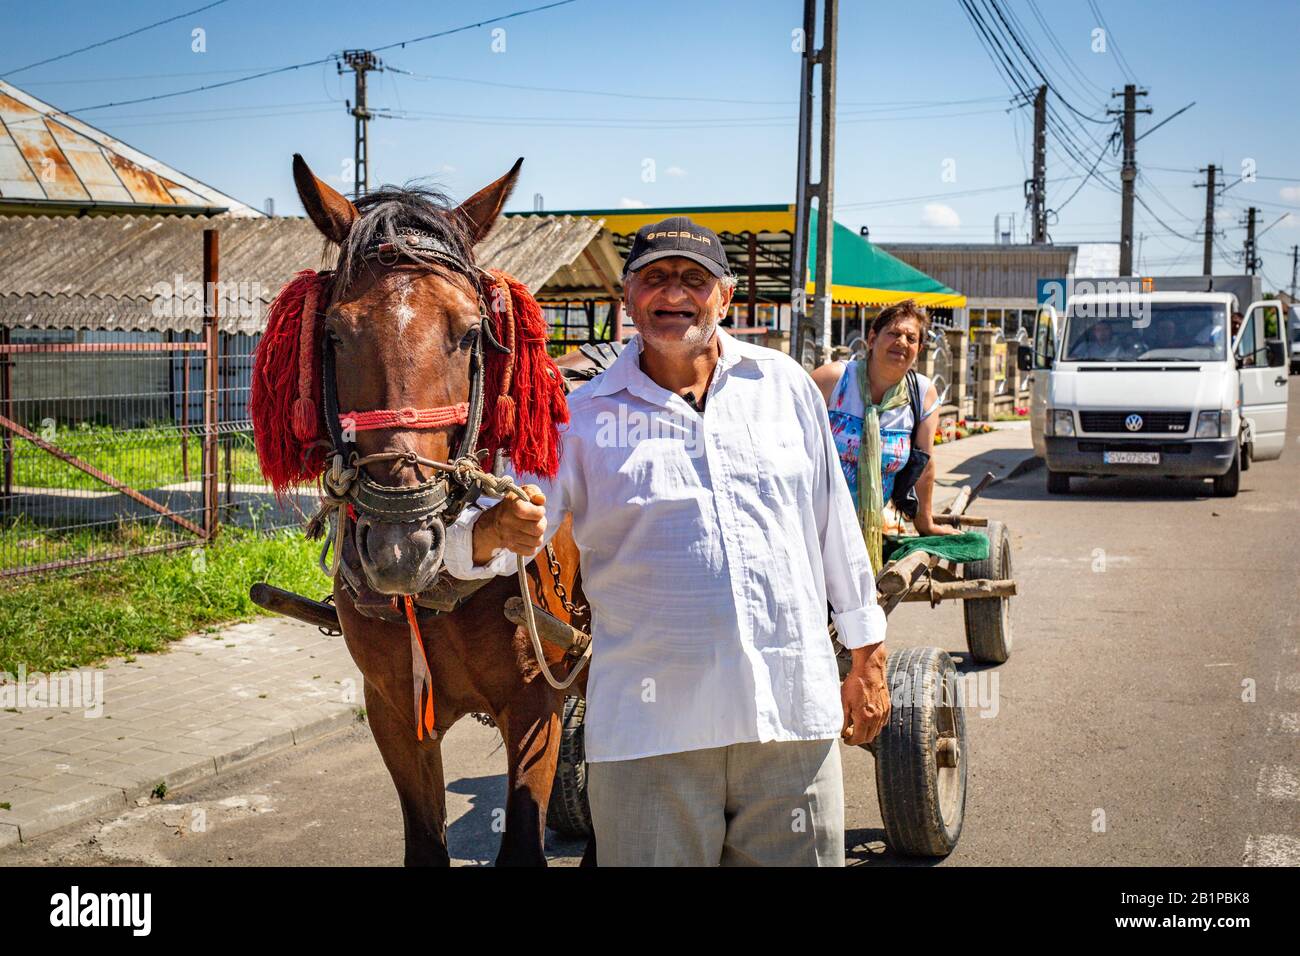 Bucovina / Roumanie - agriculteur roumain sur une campagne charrette en Roumanie - vie quotidienne. Banque D'Images